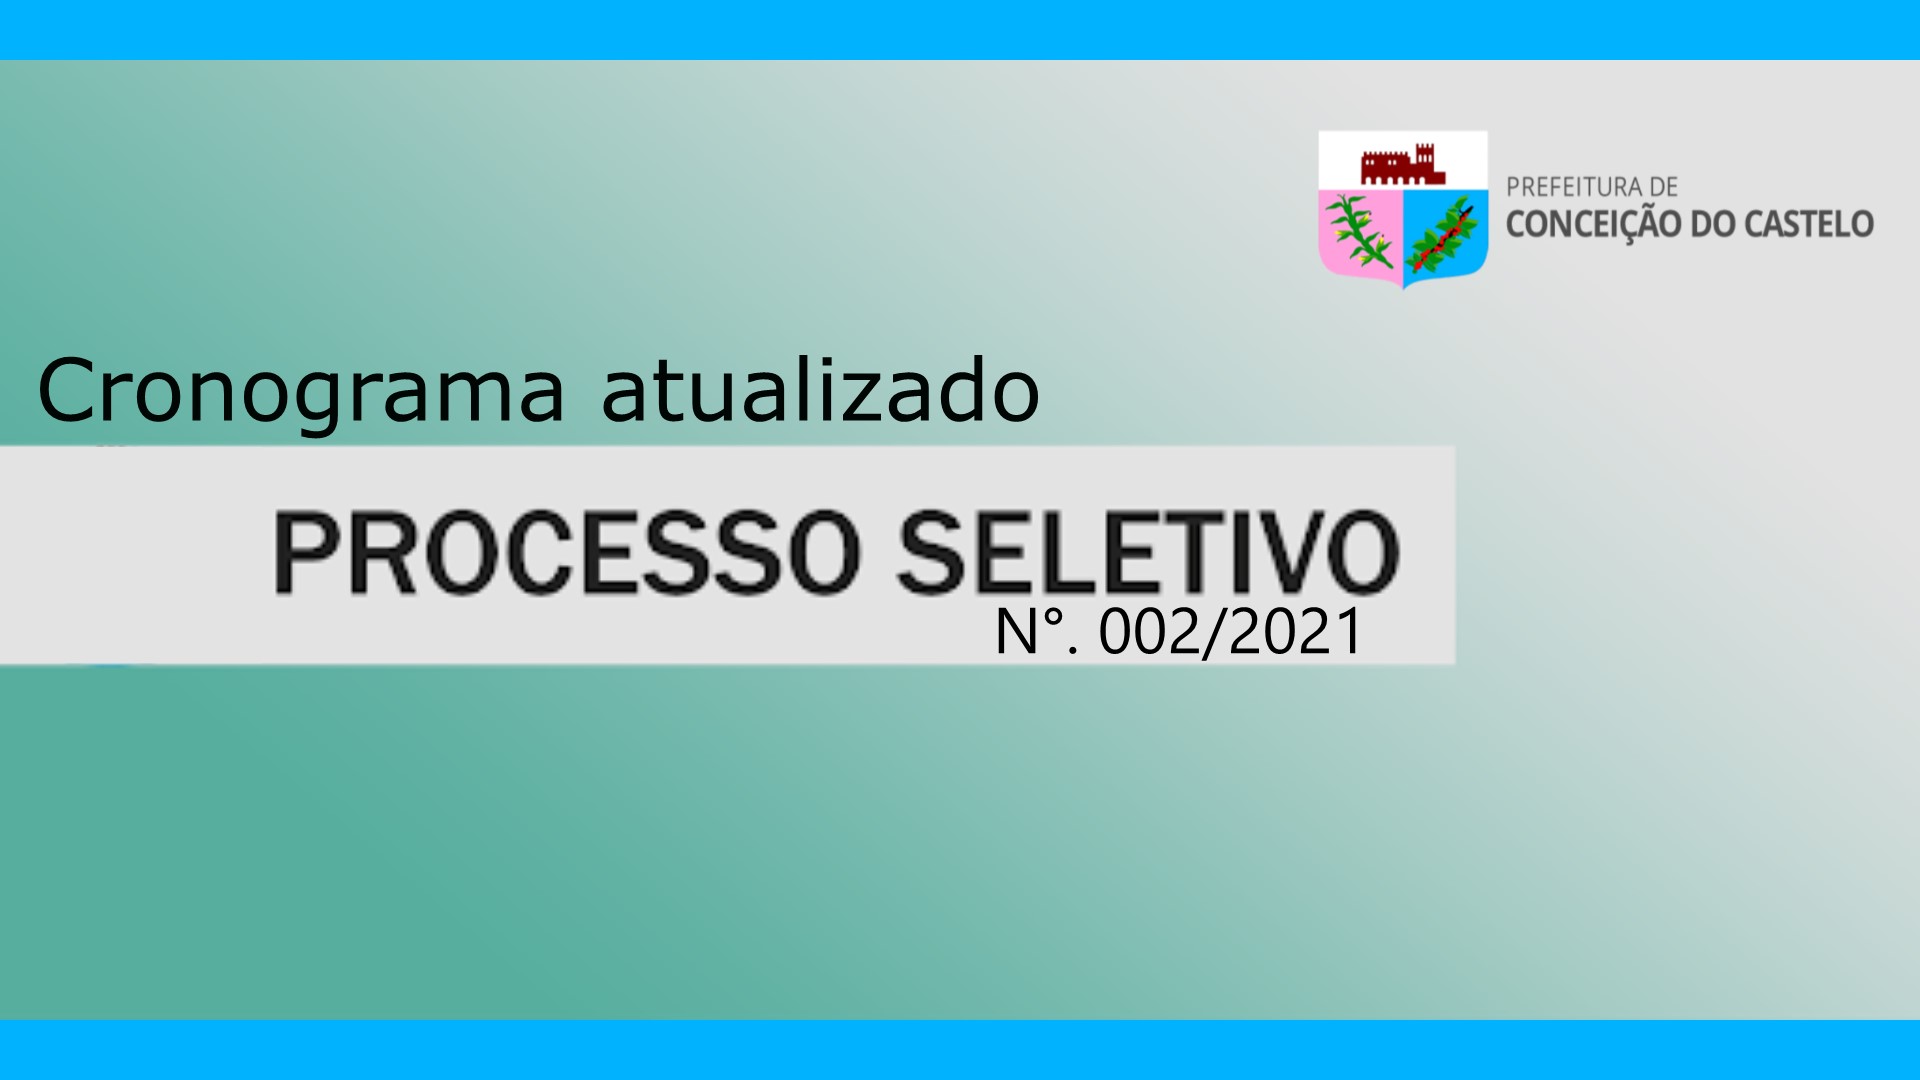 CRONOGRAMA ATUALIZADO DO PROCESSO SELETIVO N°. 002/2021